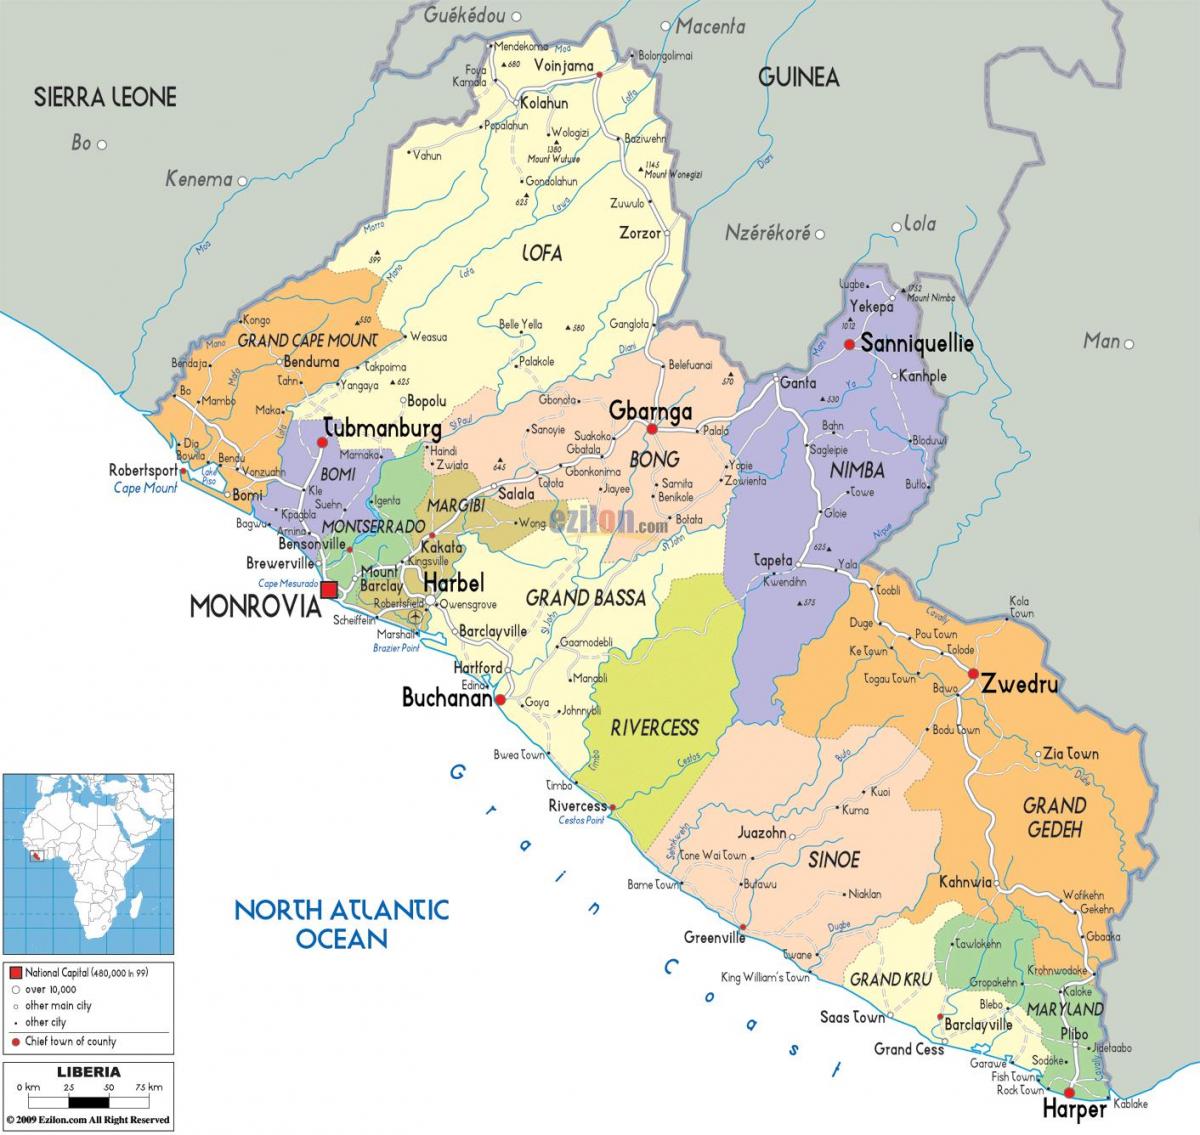 ο πολιτικός χάρτης της Λιβερίας